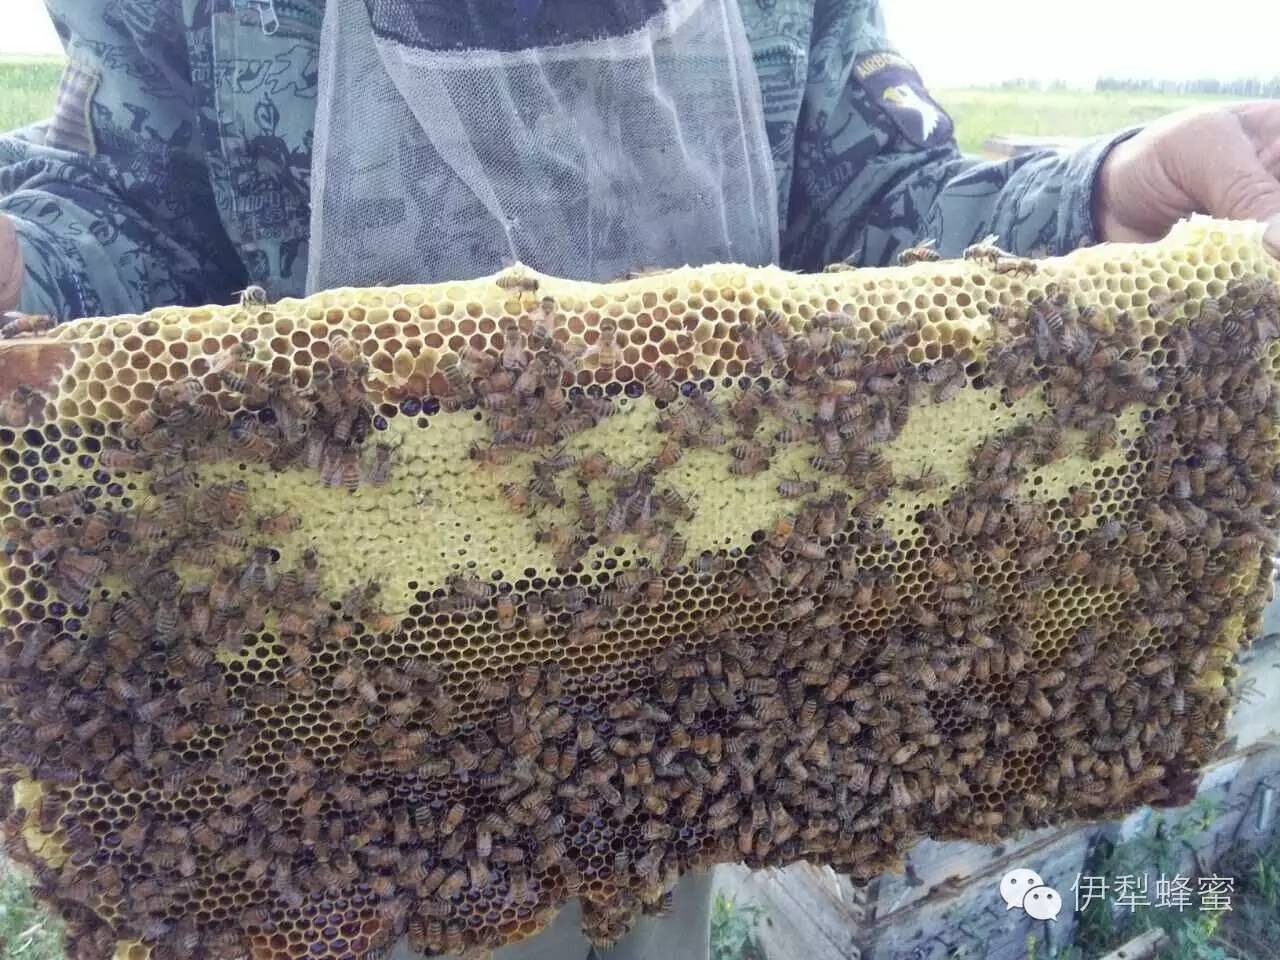 海藻蜂蜜面膜 如何用蜂蜜洗脸 蜂蜜柚子茶瘦身 蜂蜜塑料瓶 什么蜂蜜美容